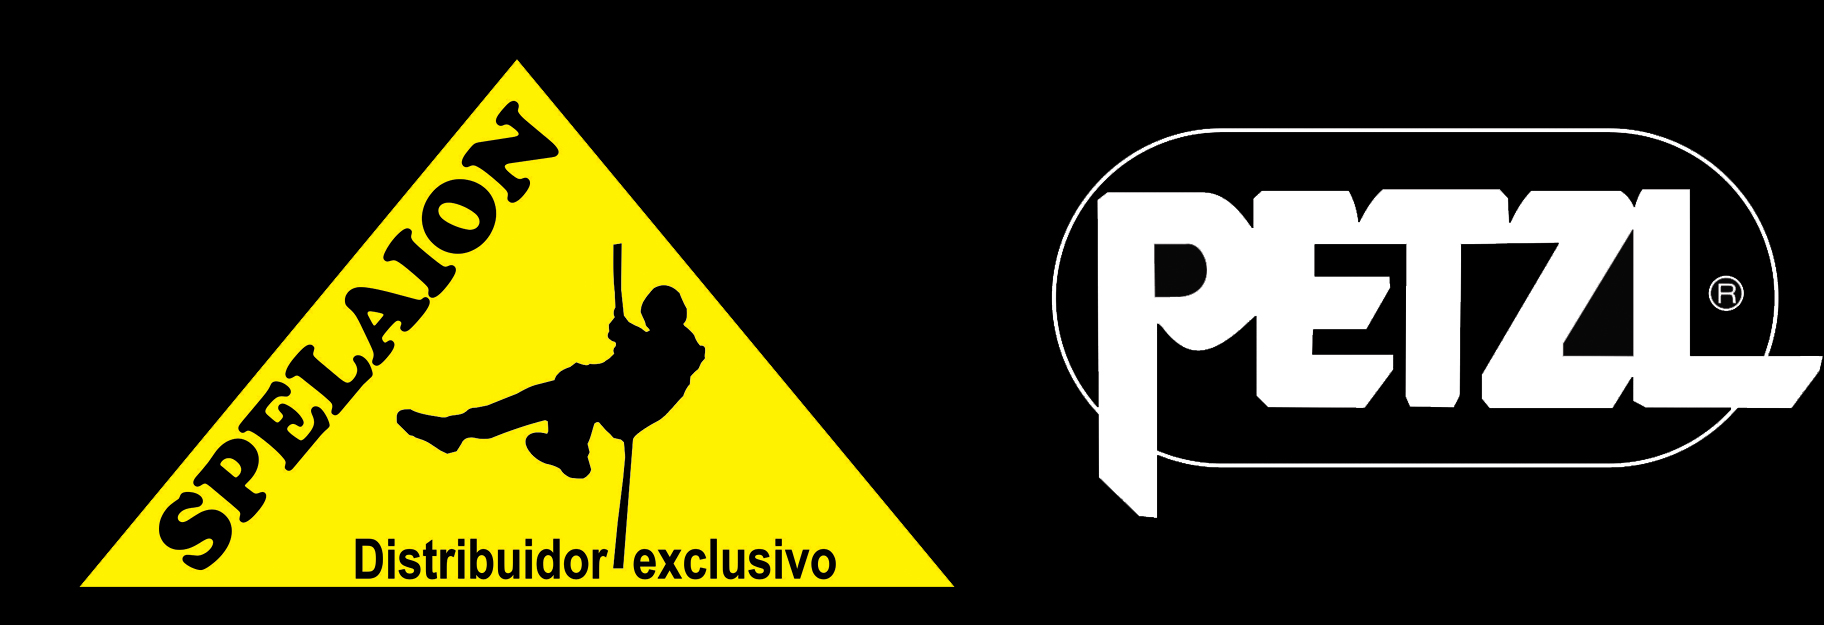 Curso Inspeção de EPI de Altura e Resgate ON-LINE - Acesse: ead.spelaion.com  - Loja Spelaion - Representante oficial da marca Petzl no Brasil